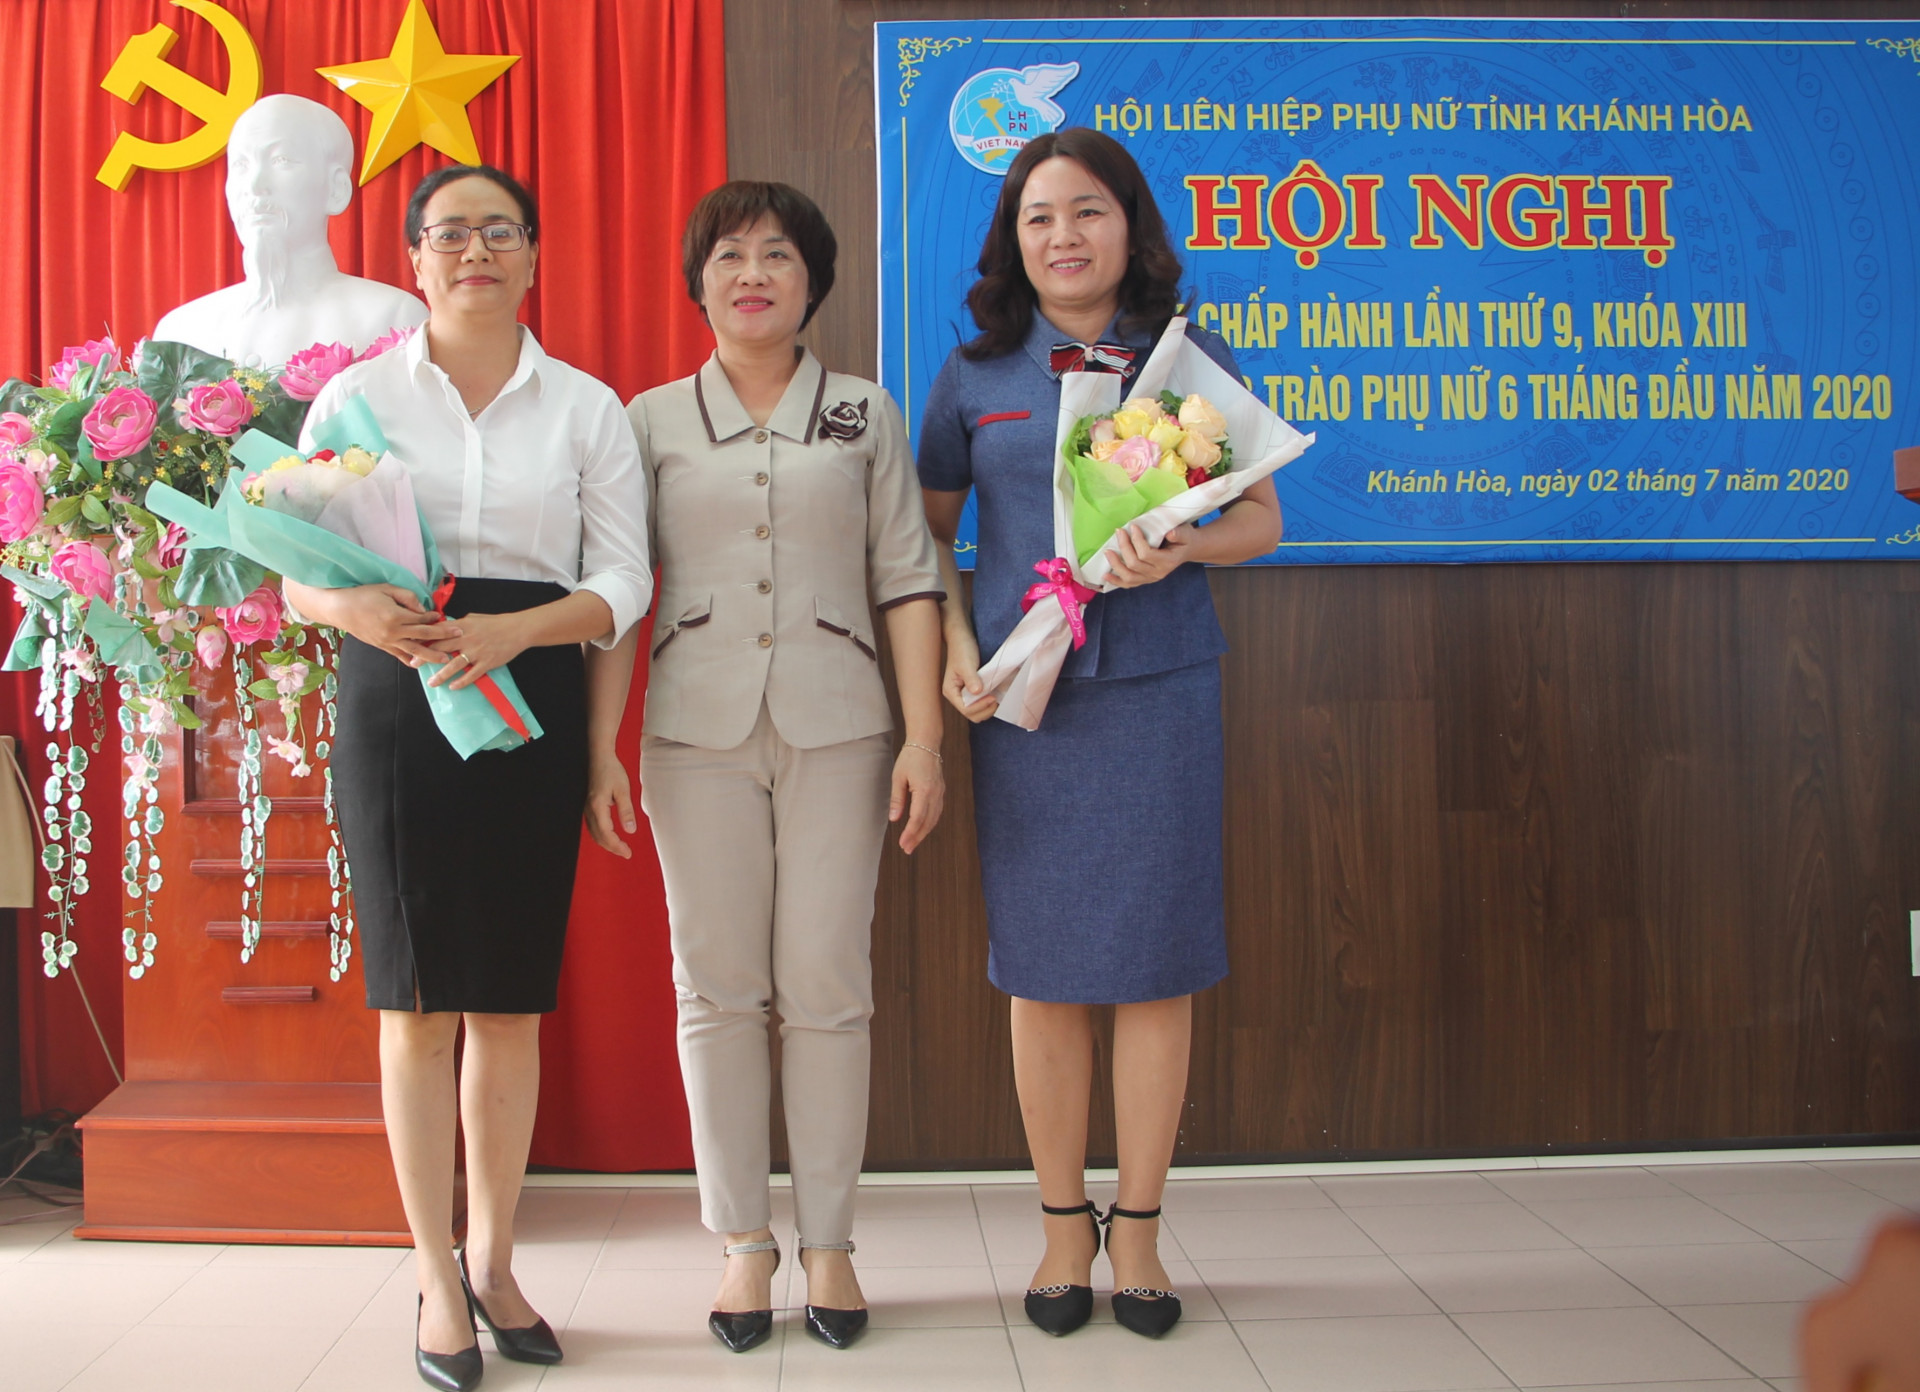 2 Phó Chủ tịch Hội LHPN Khánh Hòa được bầu bổ sung ra mắt hội nghị